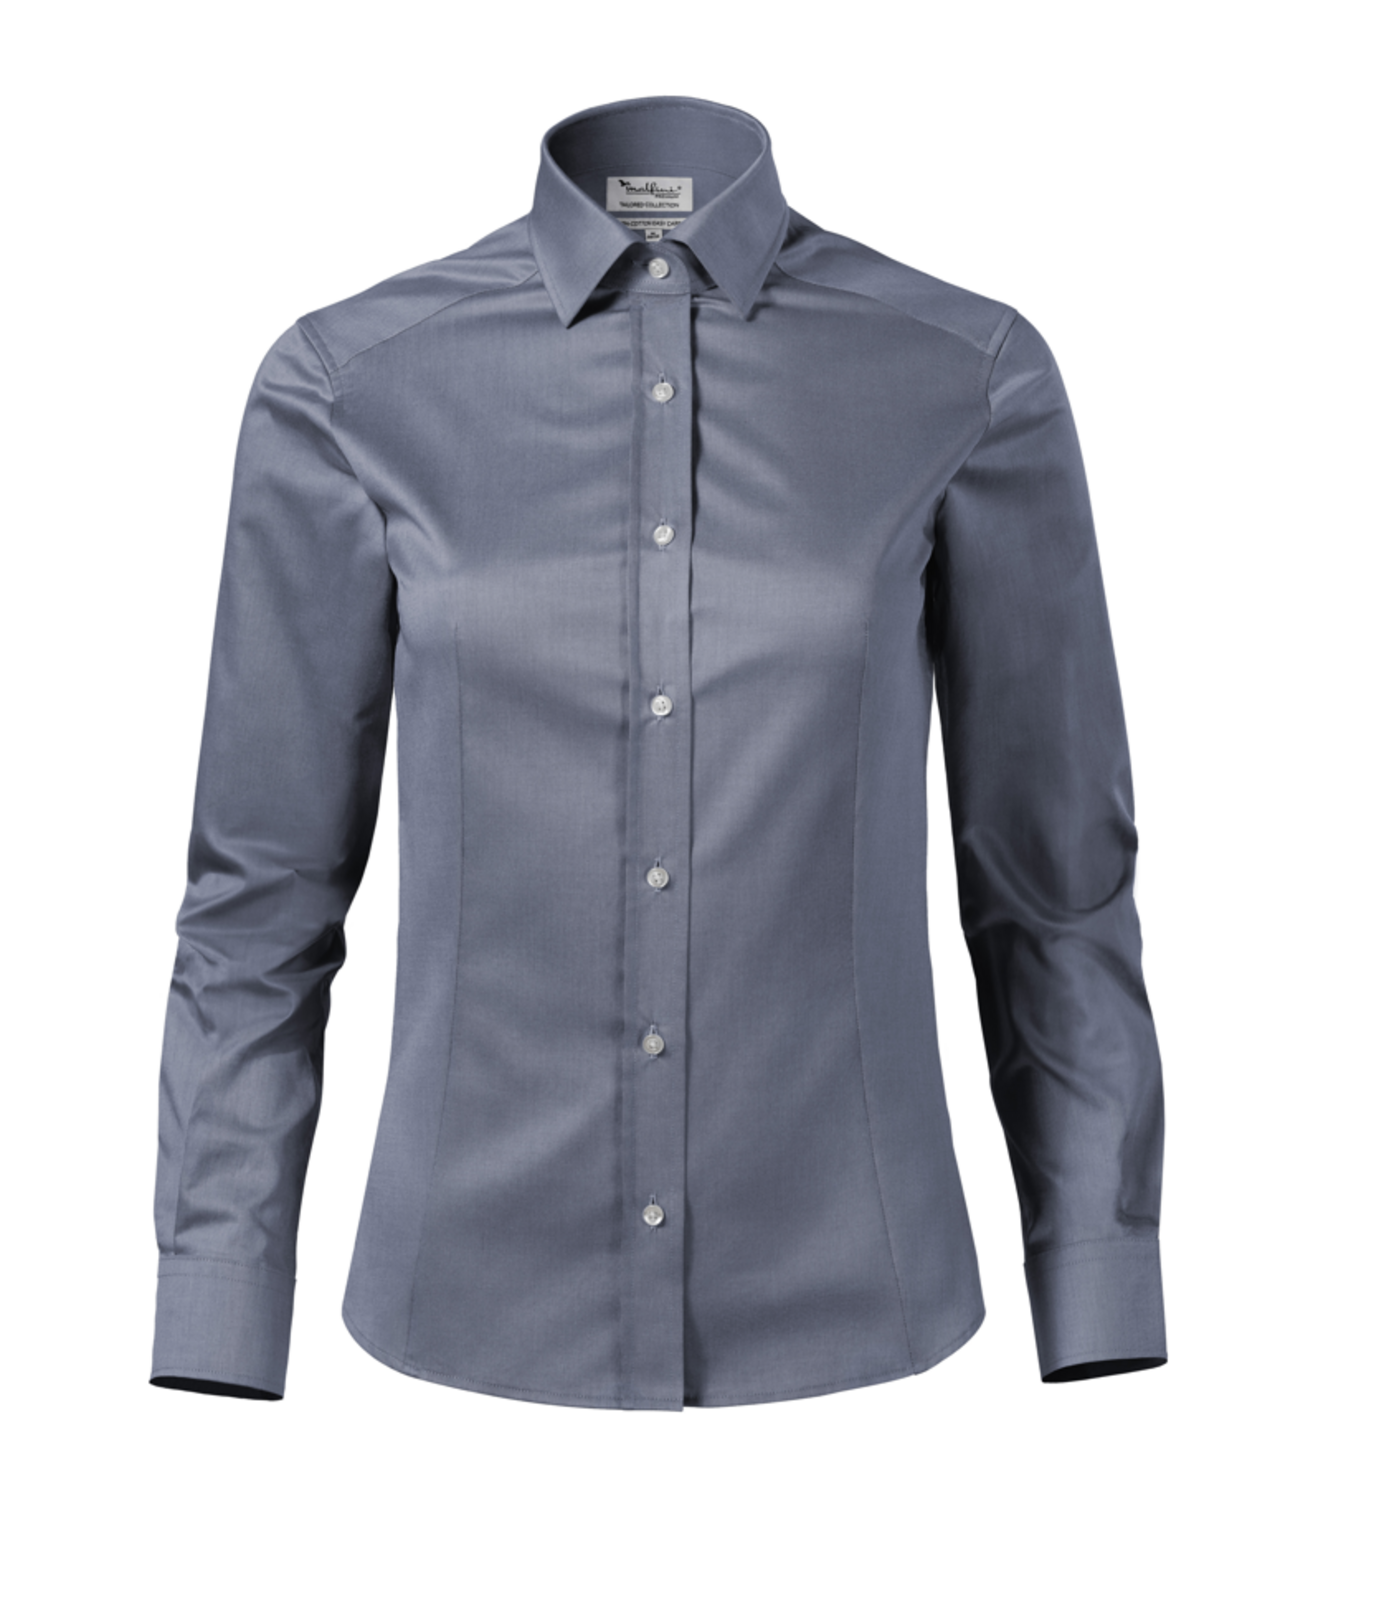 Dámska košeľa s dlhým rukávom Malfini Premium Journey 265 - veľkosť: L, farba: búrkovo sivá melange